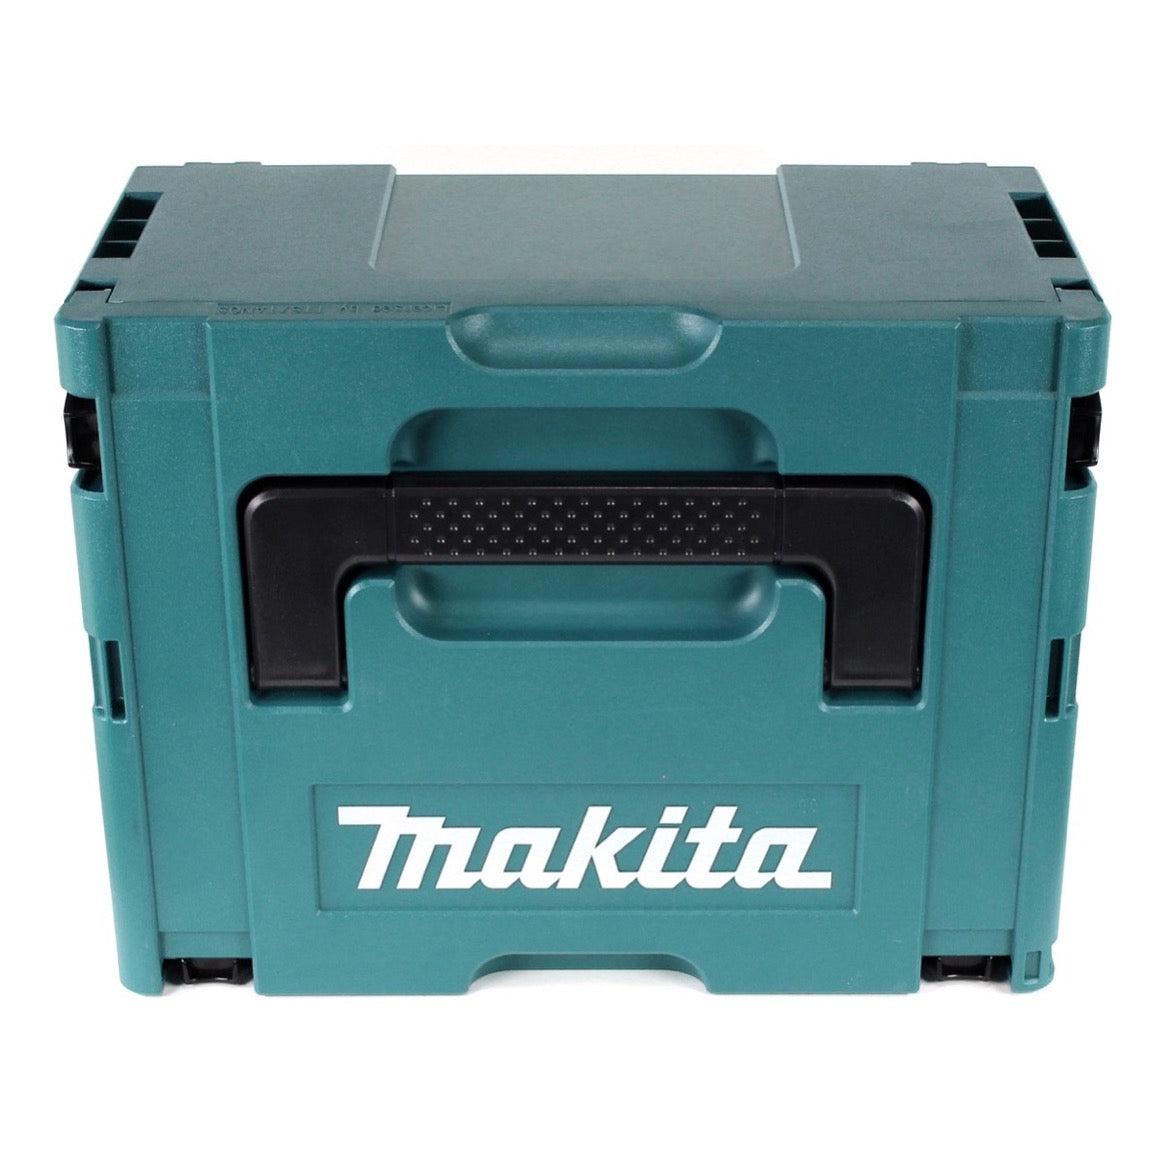 Makita DCS 553 T1J Akku Metallhandkreissäge 18V 150 mm Brushless + 1x Akku 5,0Ah + Makpac - ohne Ladegerät - Toolbrothers